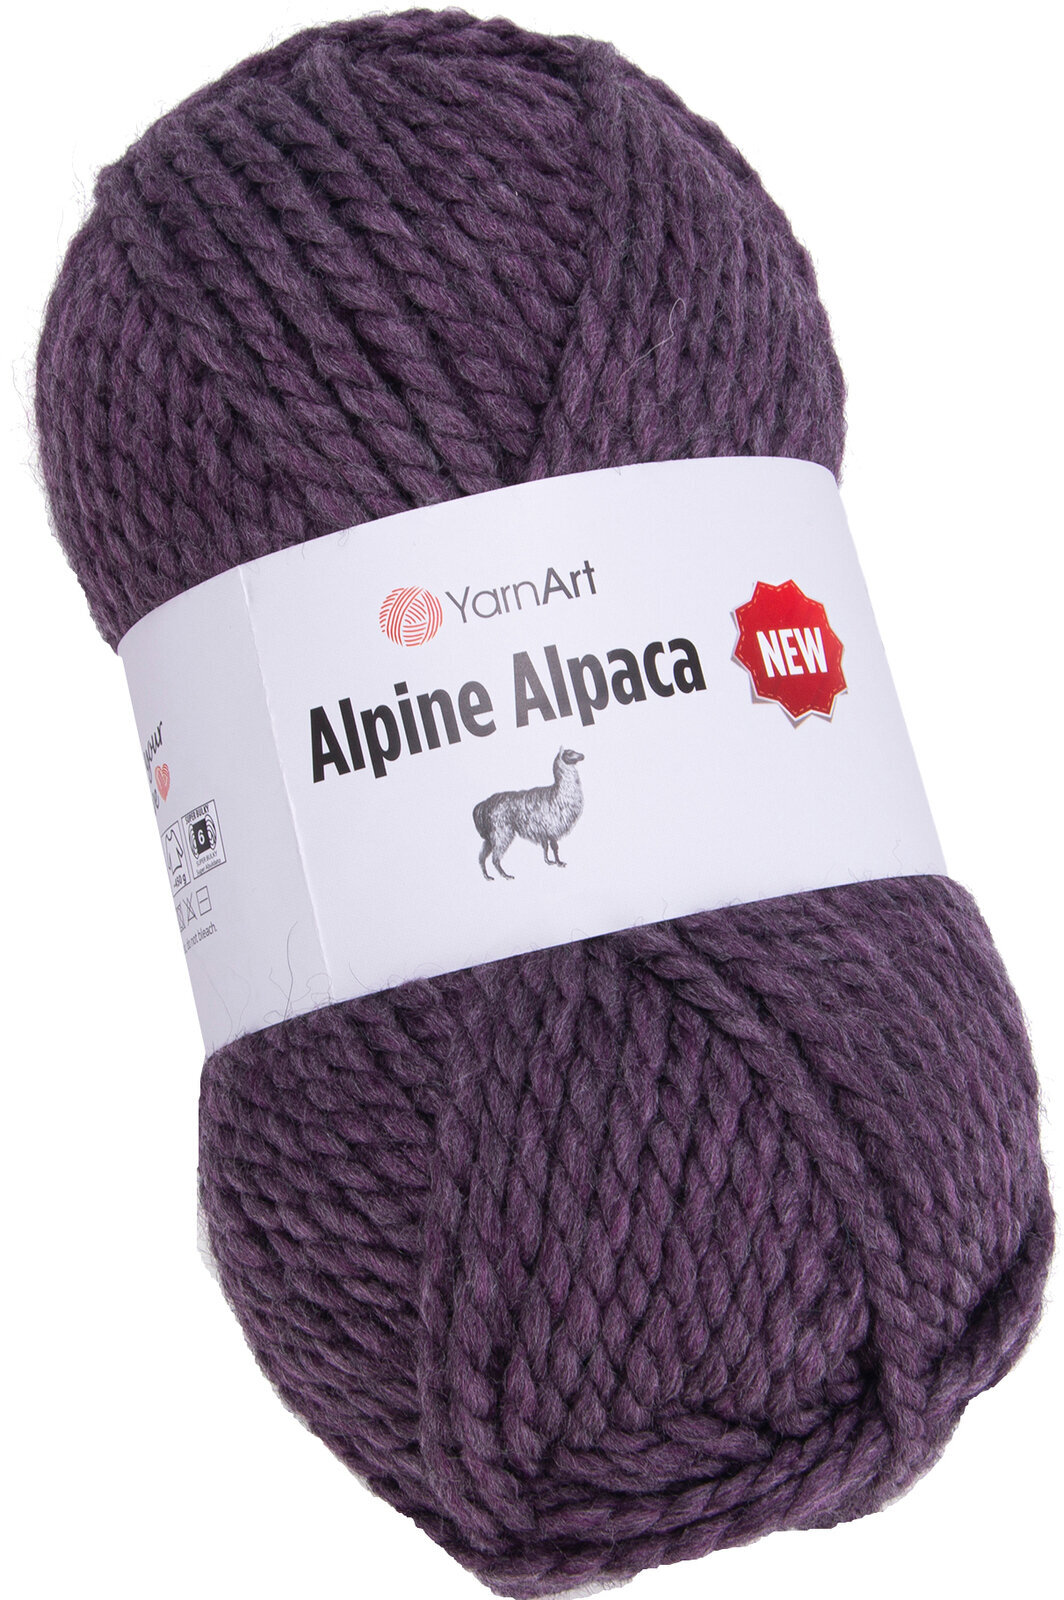 Przędza dziewiarska Yarn Art Alpine Alpaca New 1451